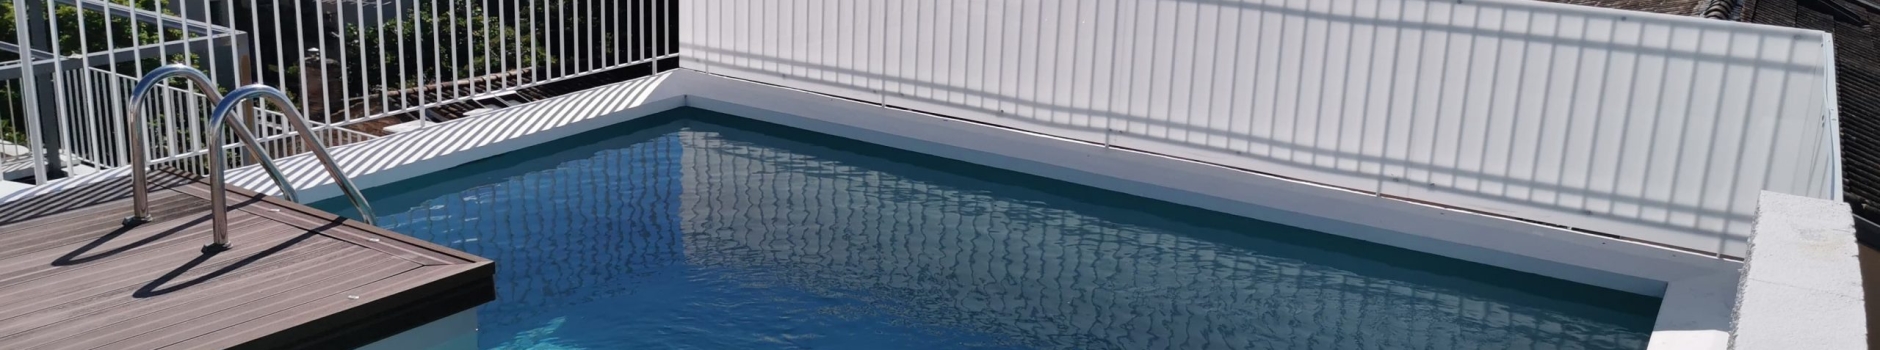 Rénovation piscine sur toit terrasse